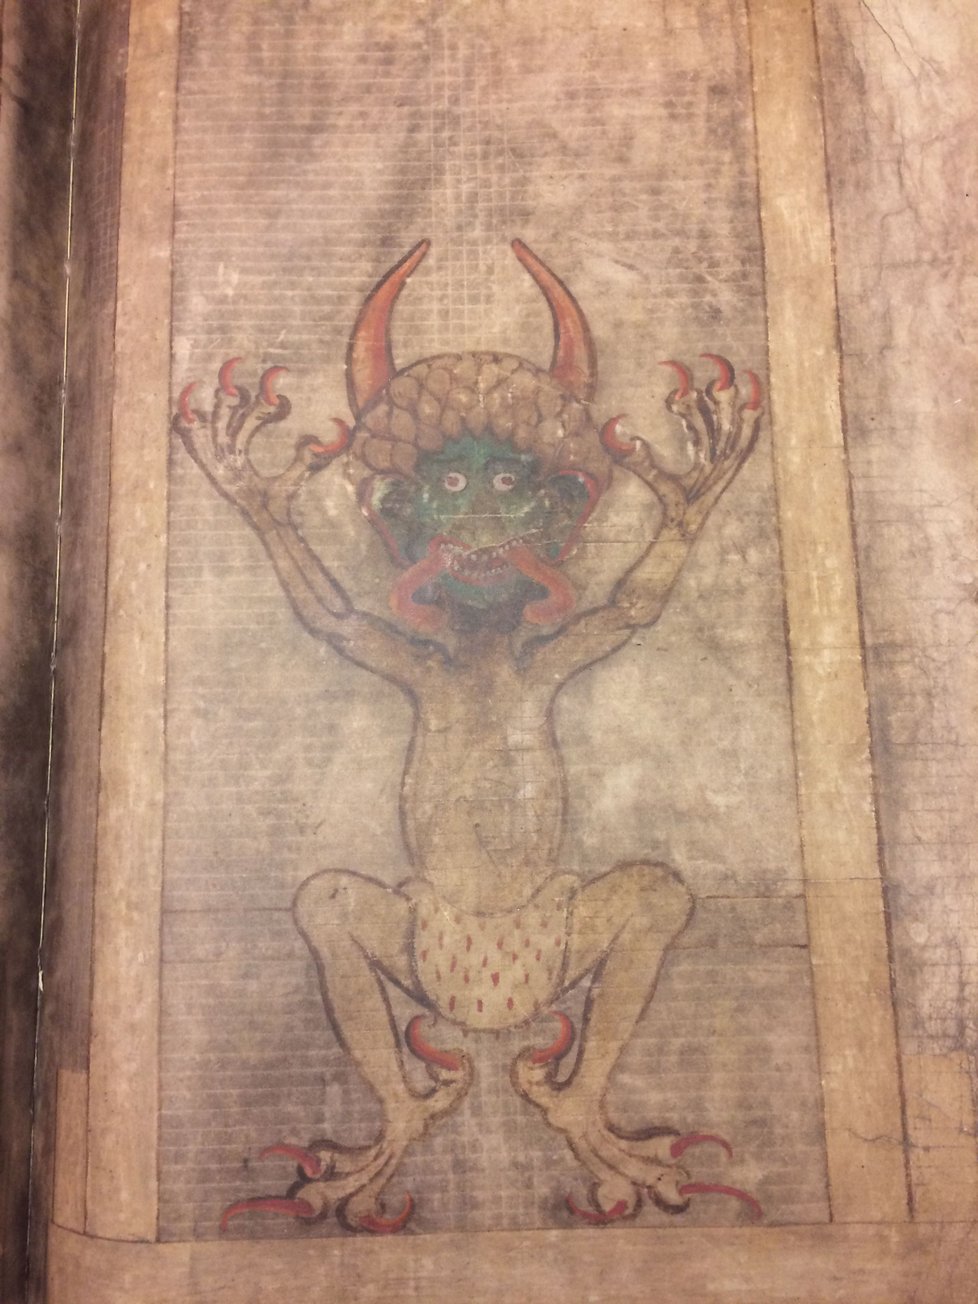 Codex gigas neboli Ďáblova bible, největší rukopisná kniha světa vážící 75 kilogramů. Její maketu vyrobilo knihařství Fogl a Rambová v Žamberku. Sepsána byla ve 13. století v podlažickém klášteře.